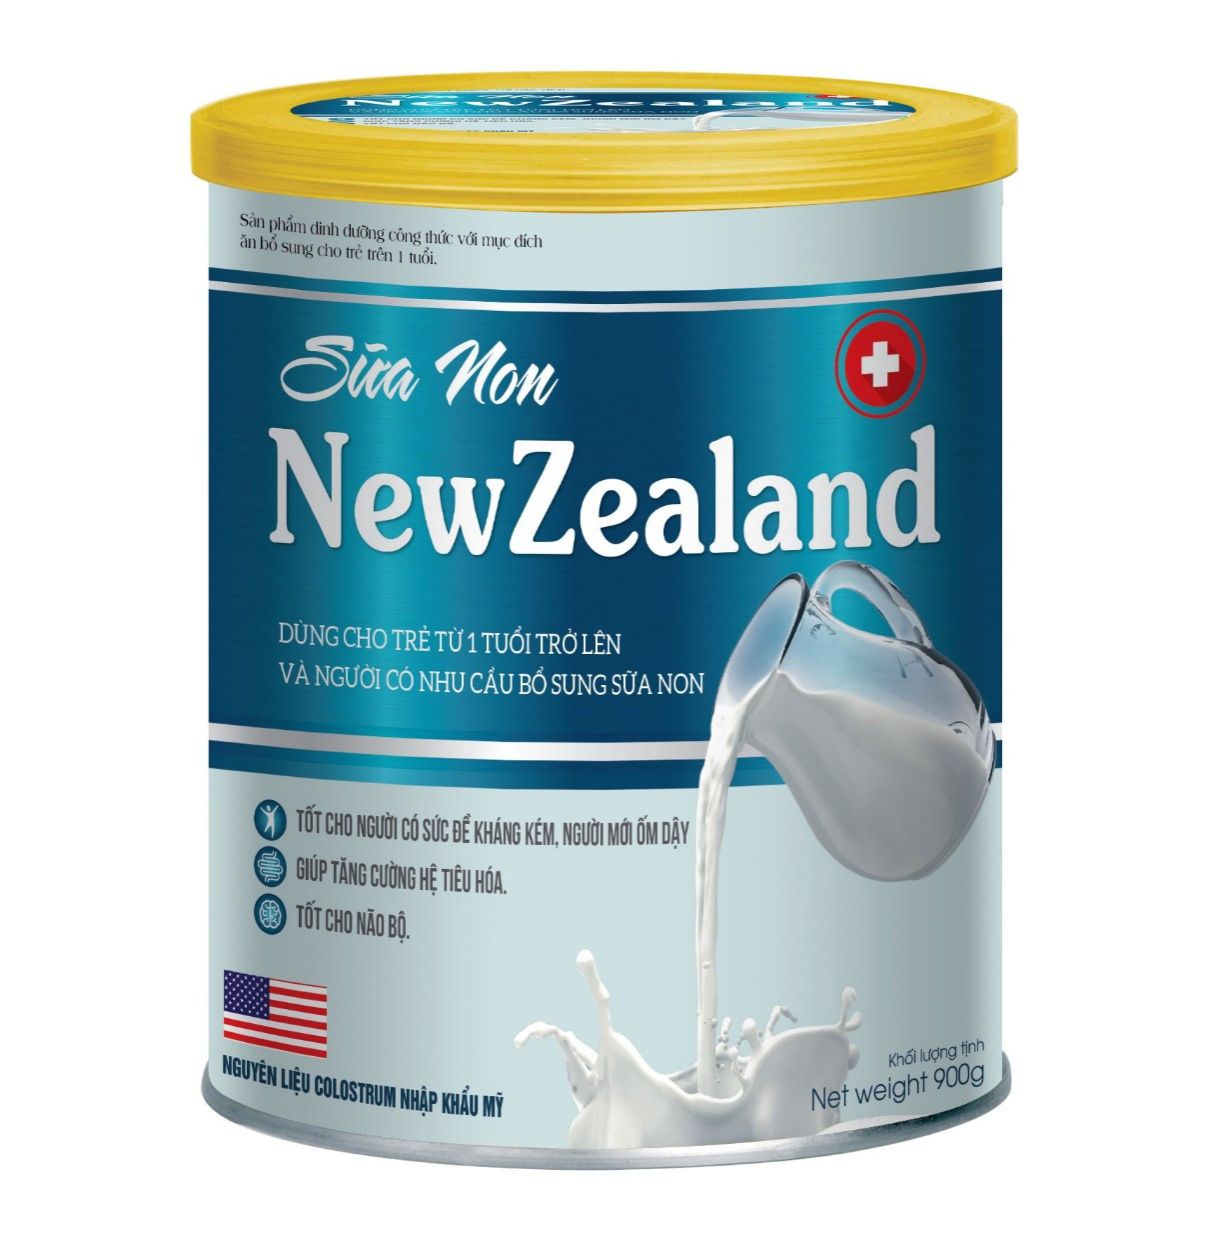 Sữa Non New Zealand Giúp Phát Triển Chiều Cao, Tăng Cân Nặng